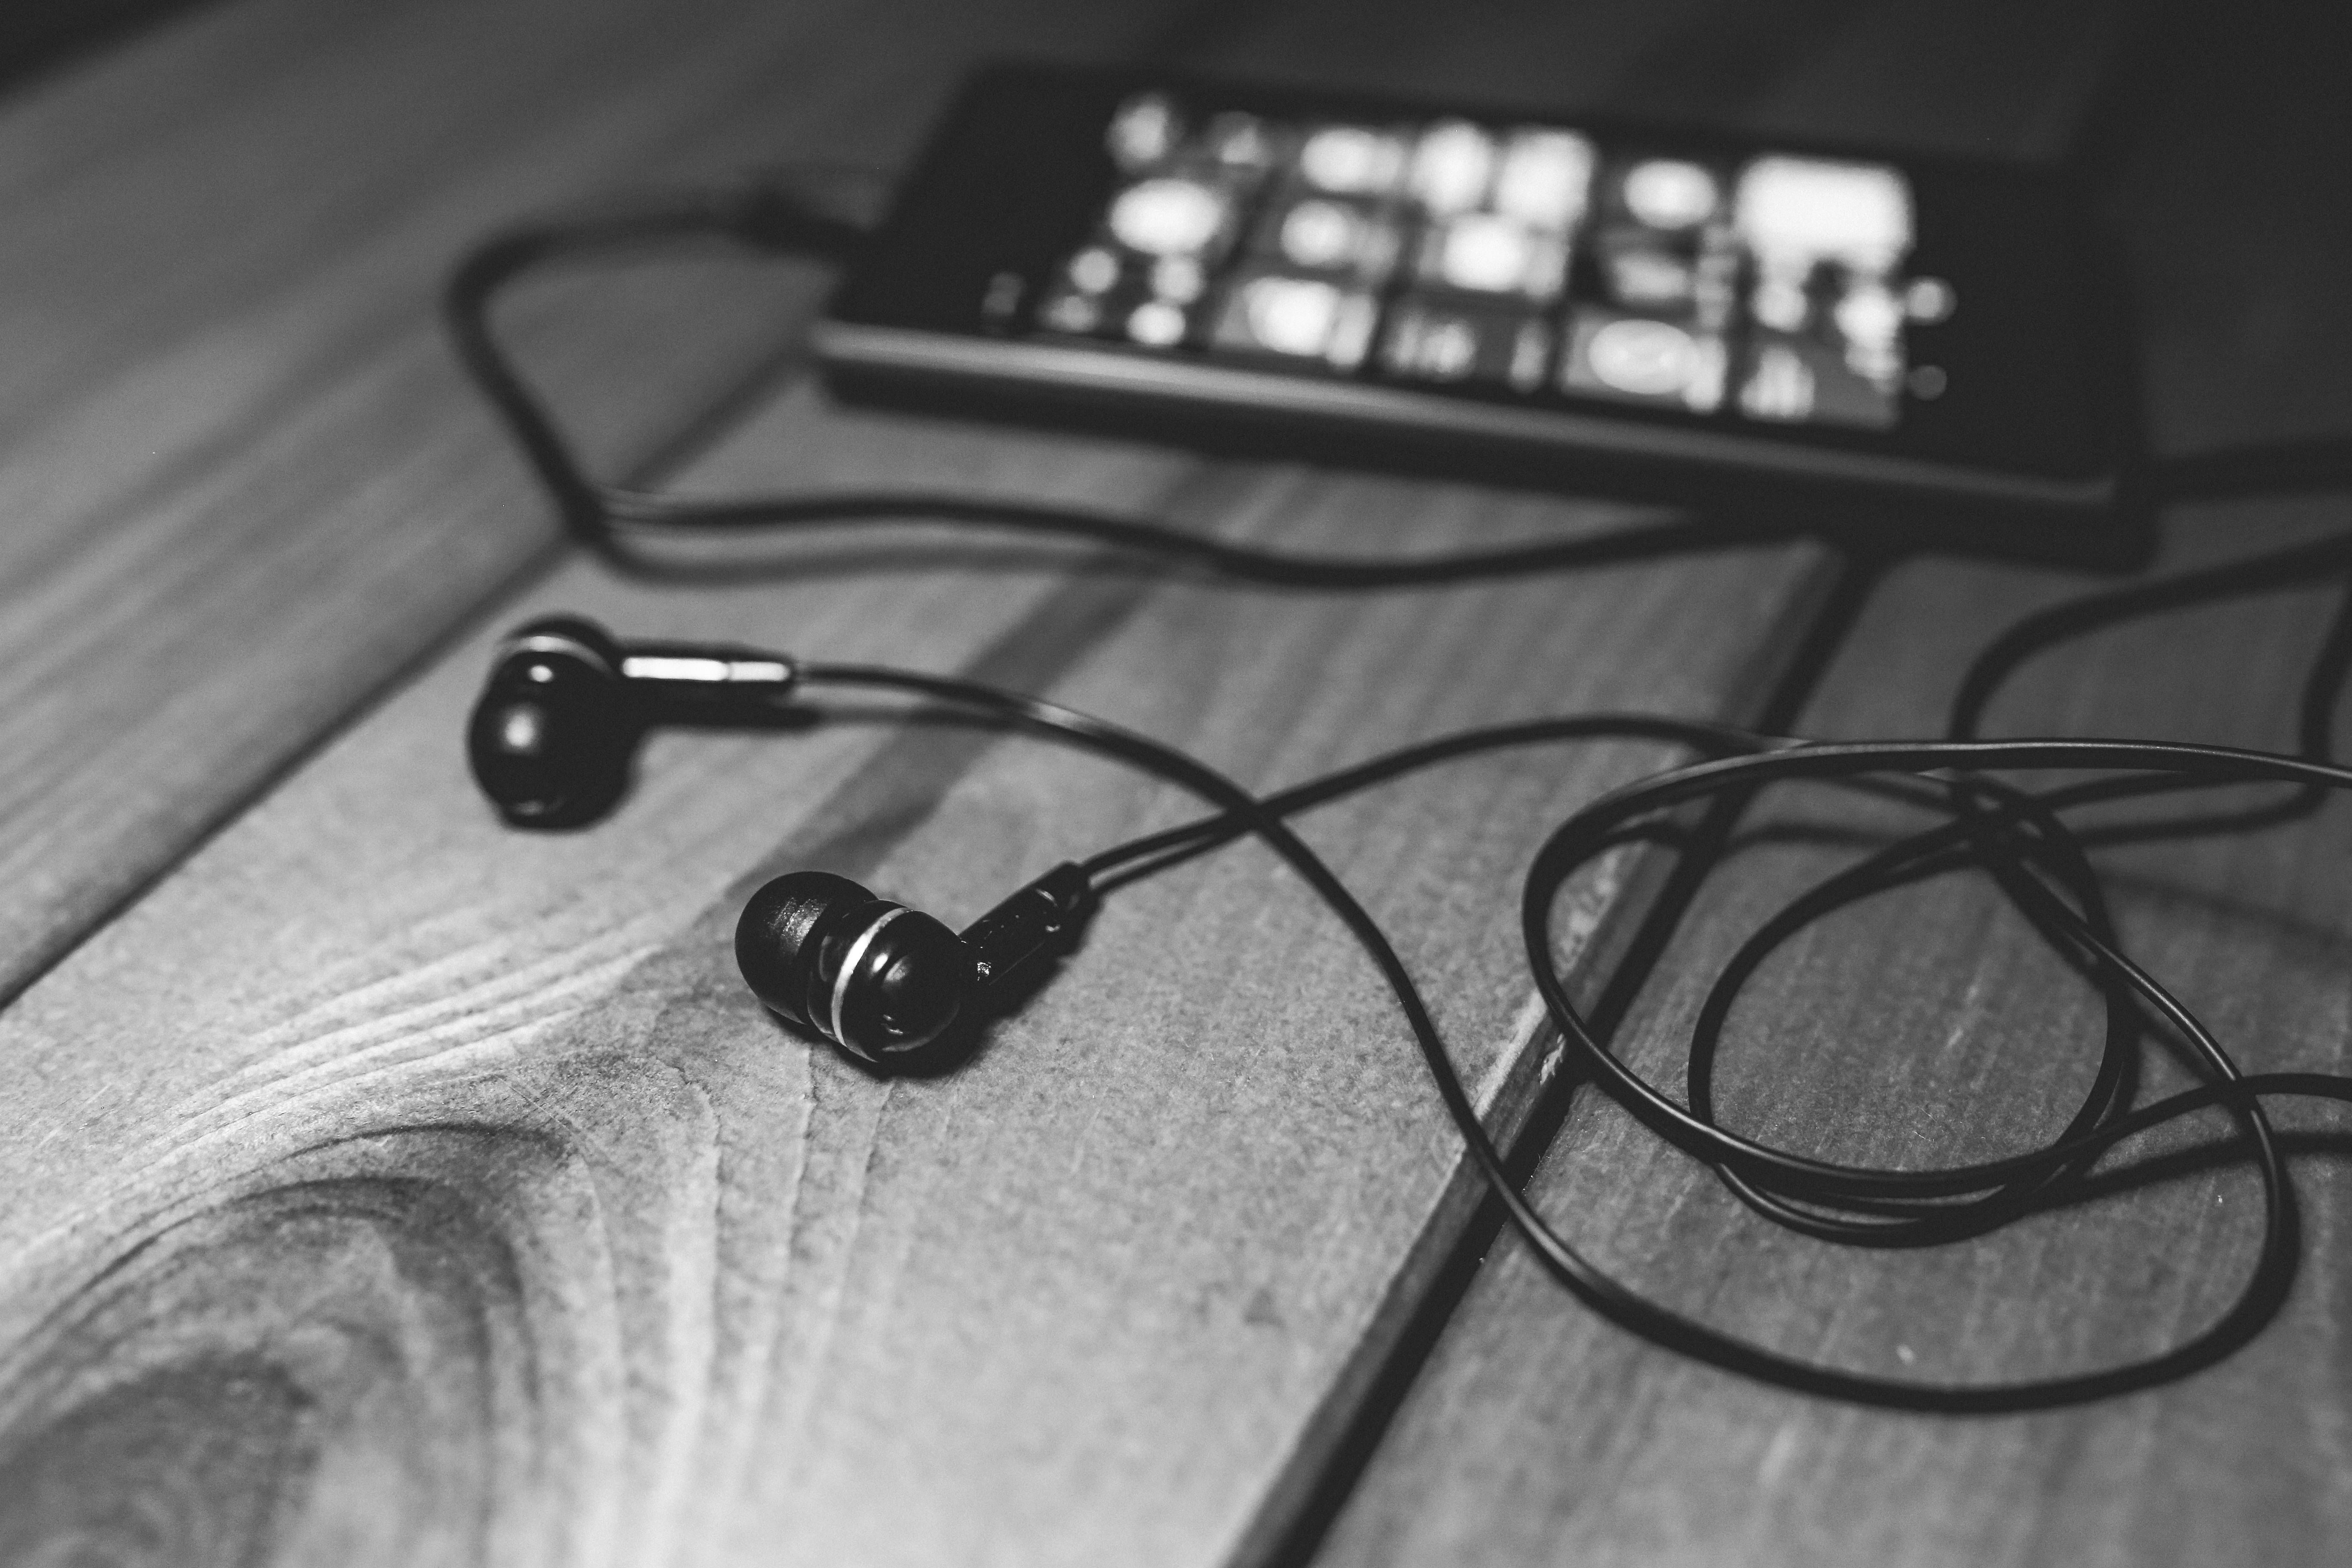 https://static.pexels.com/photos/6251/desk-music-headphones-earphones.jpg